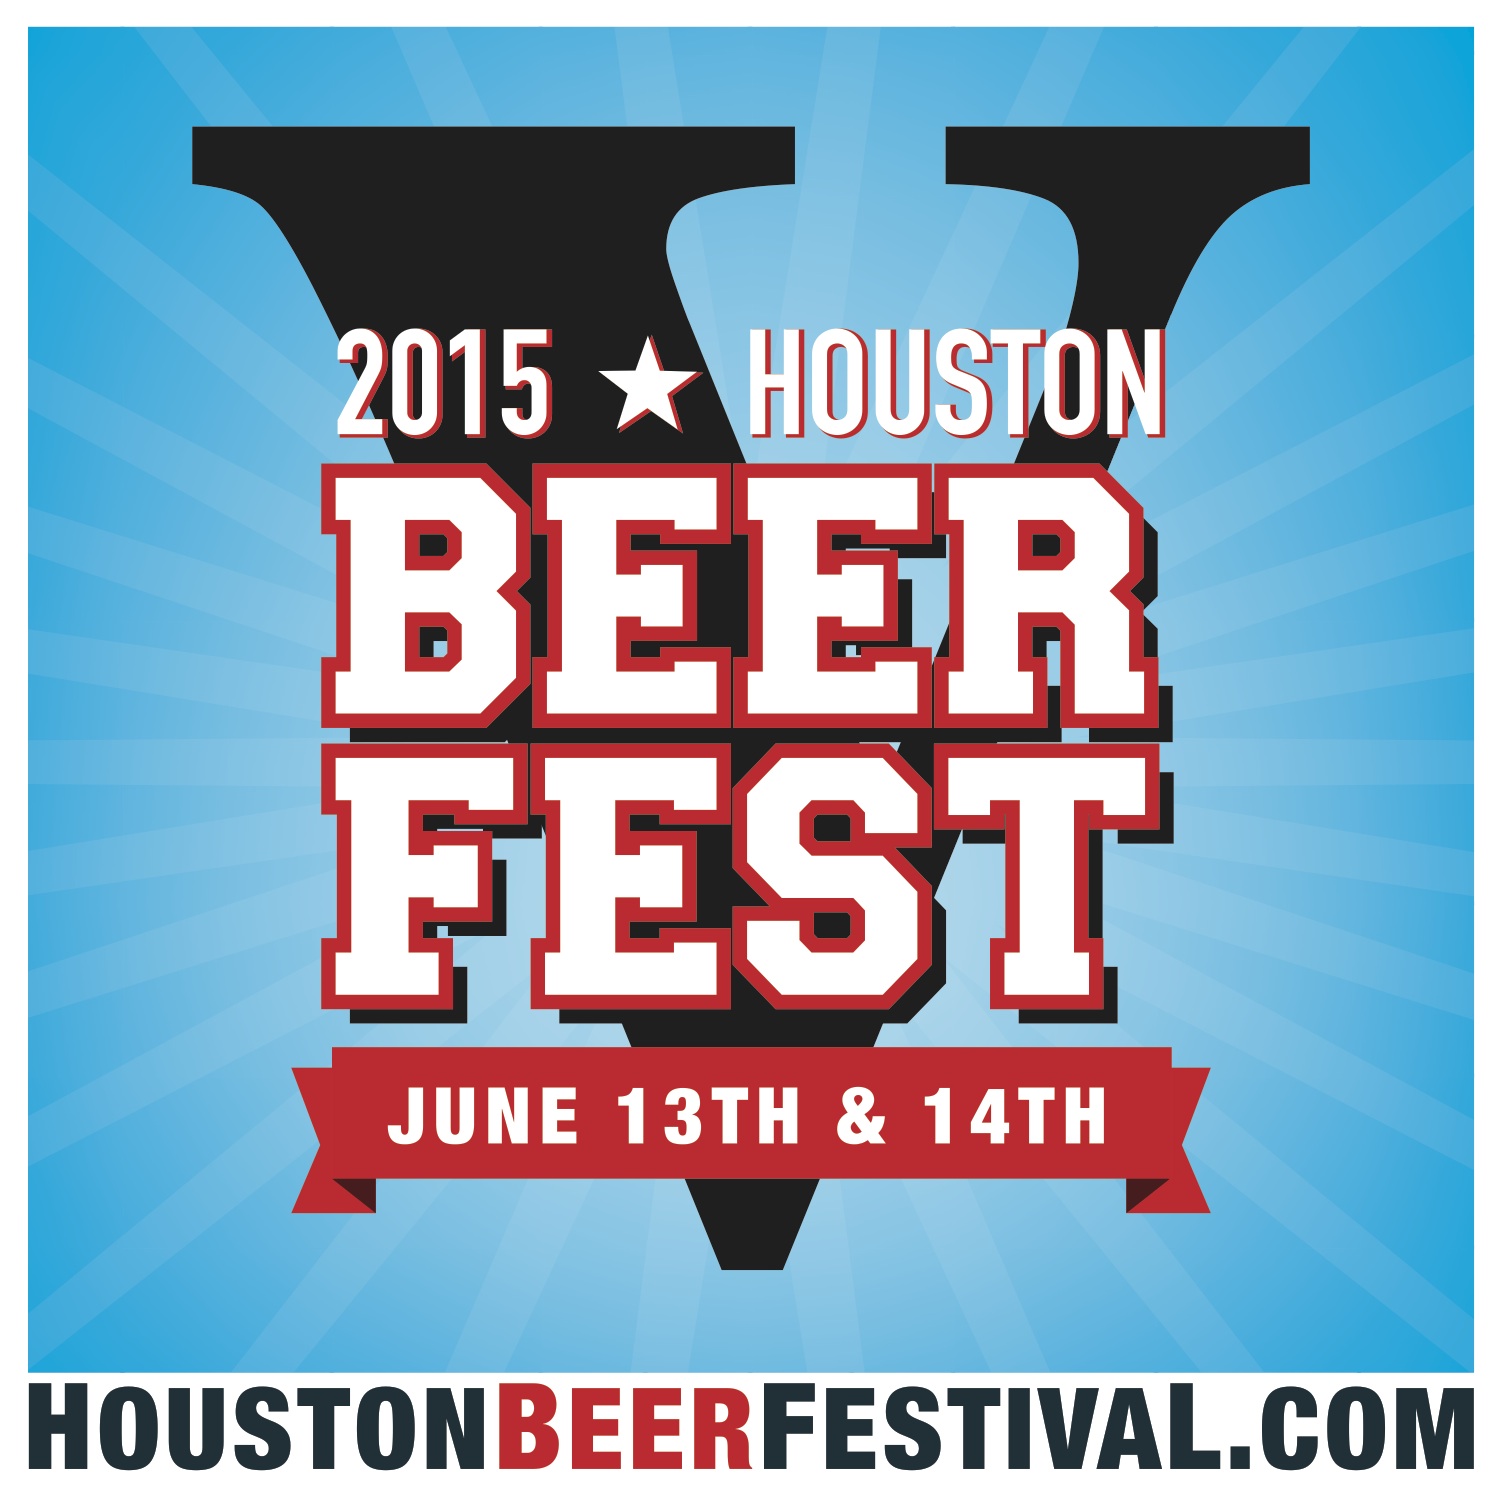 Houston Beer Festival Kicks Off This Weekend